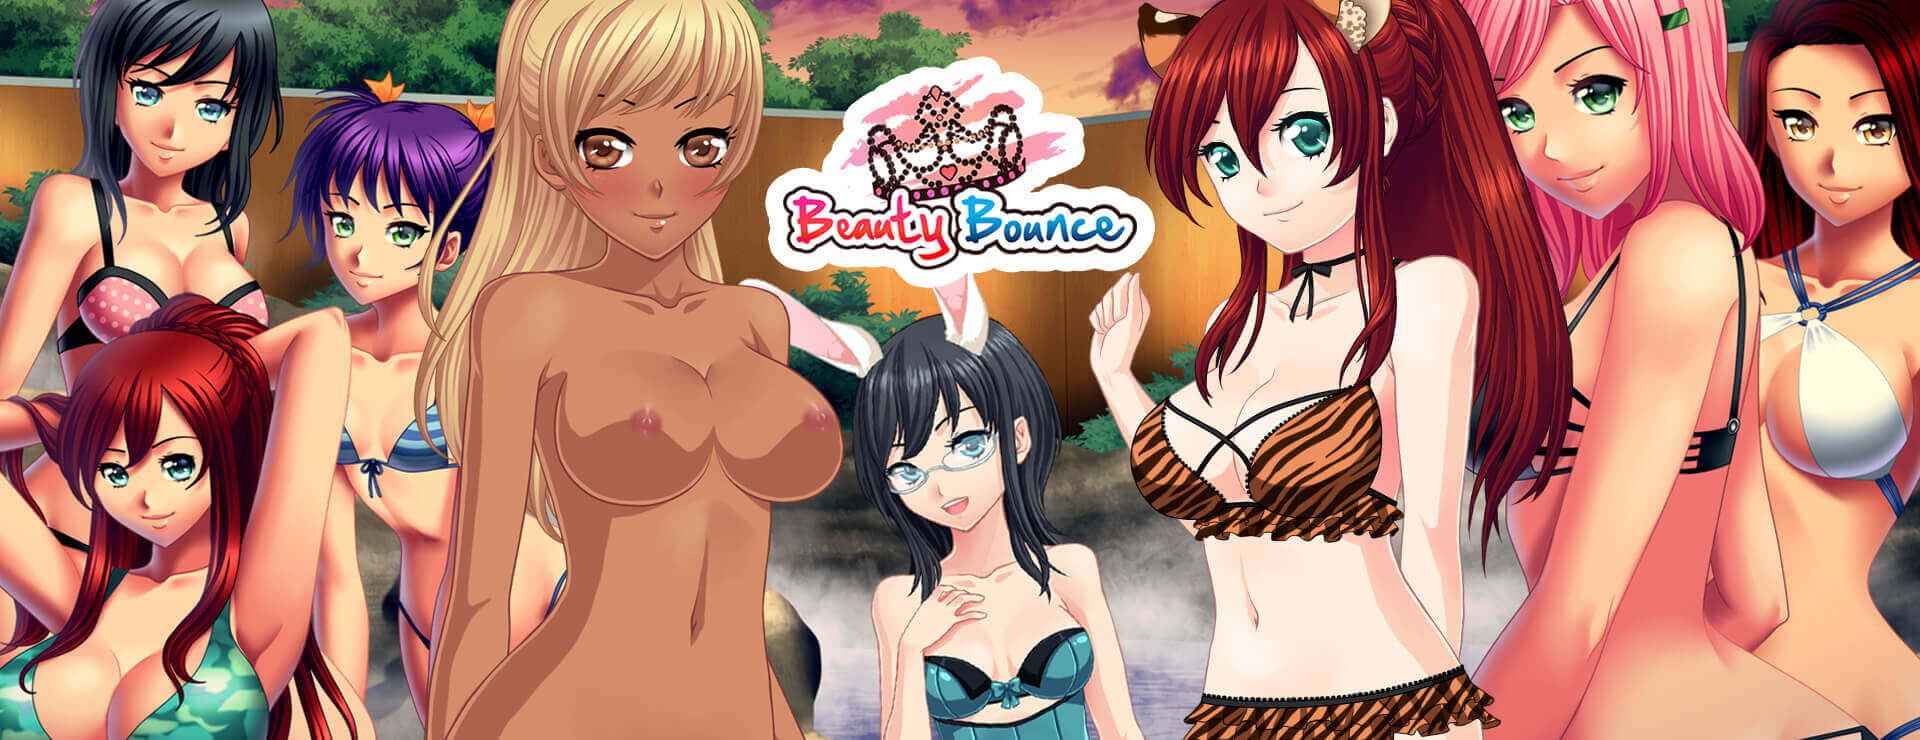 Beauty Bounce - Novela Visual Juego